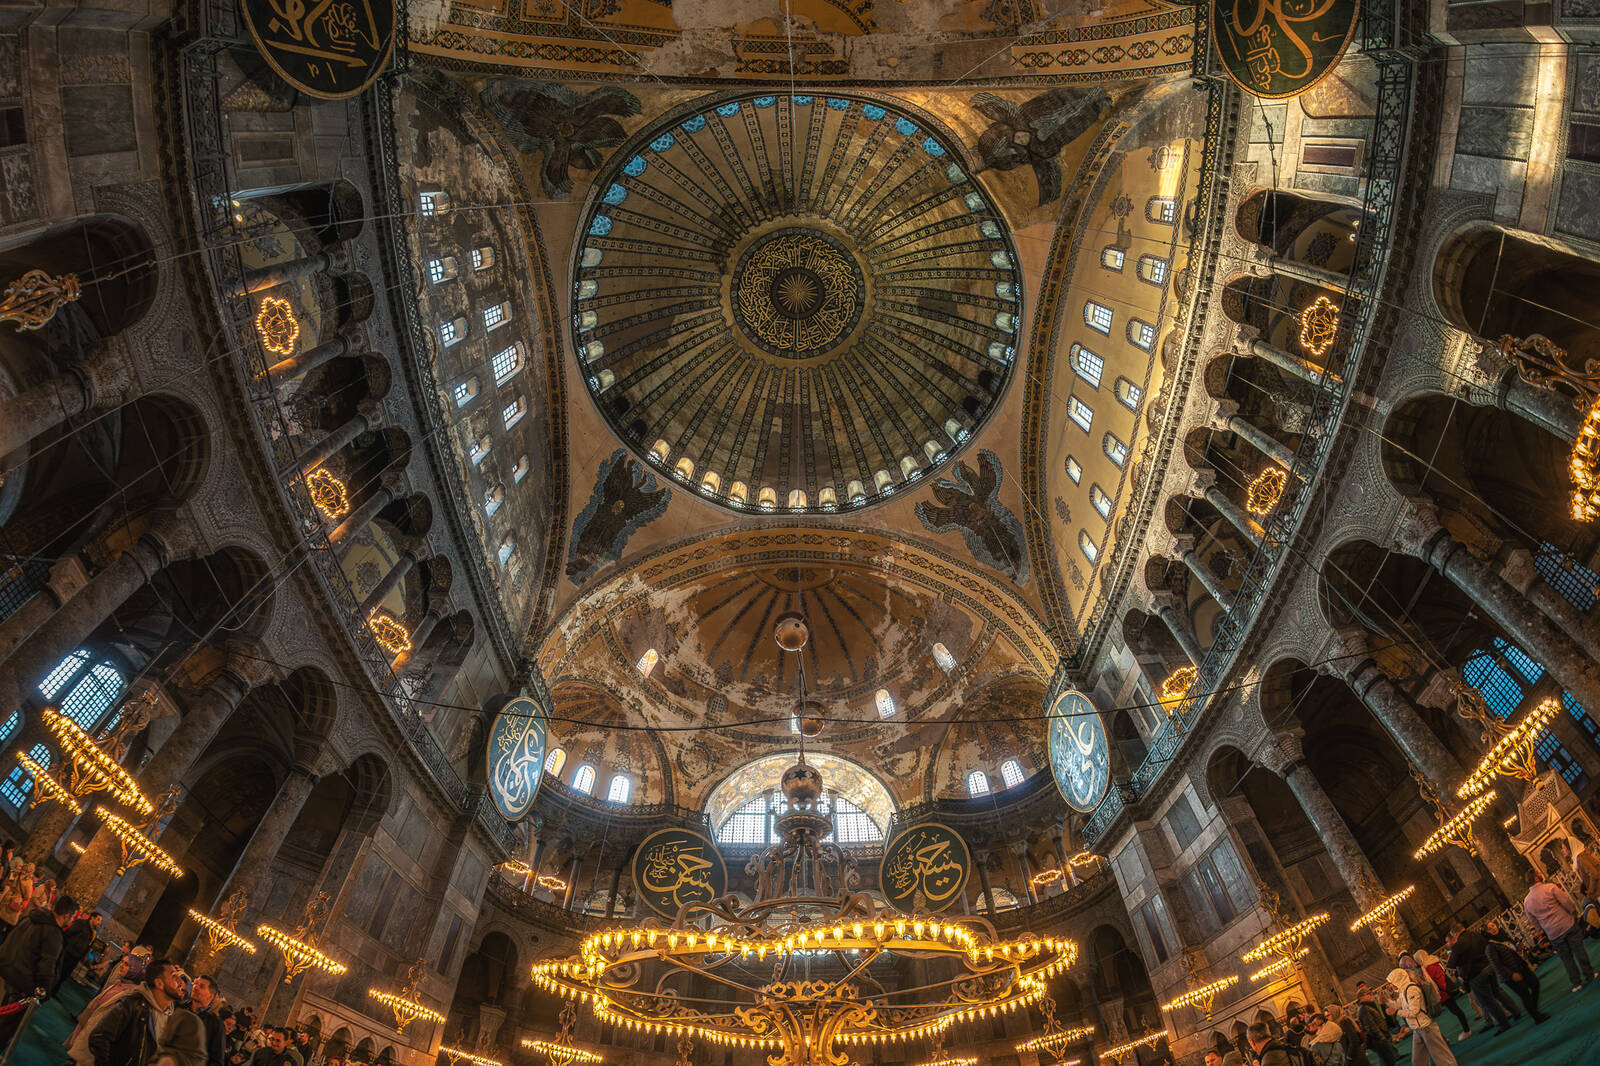 Image of Hagia Sophia by James Billings.